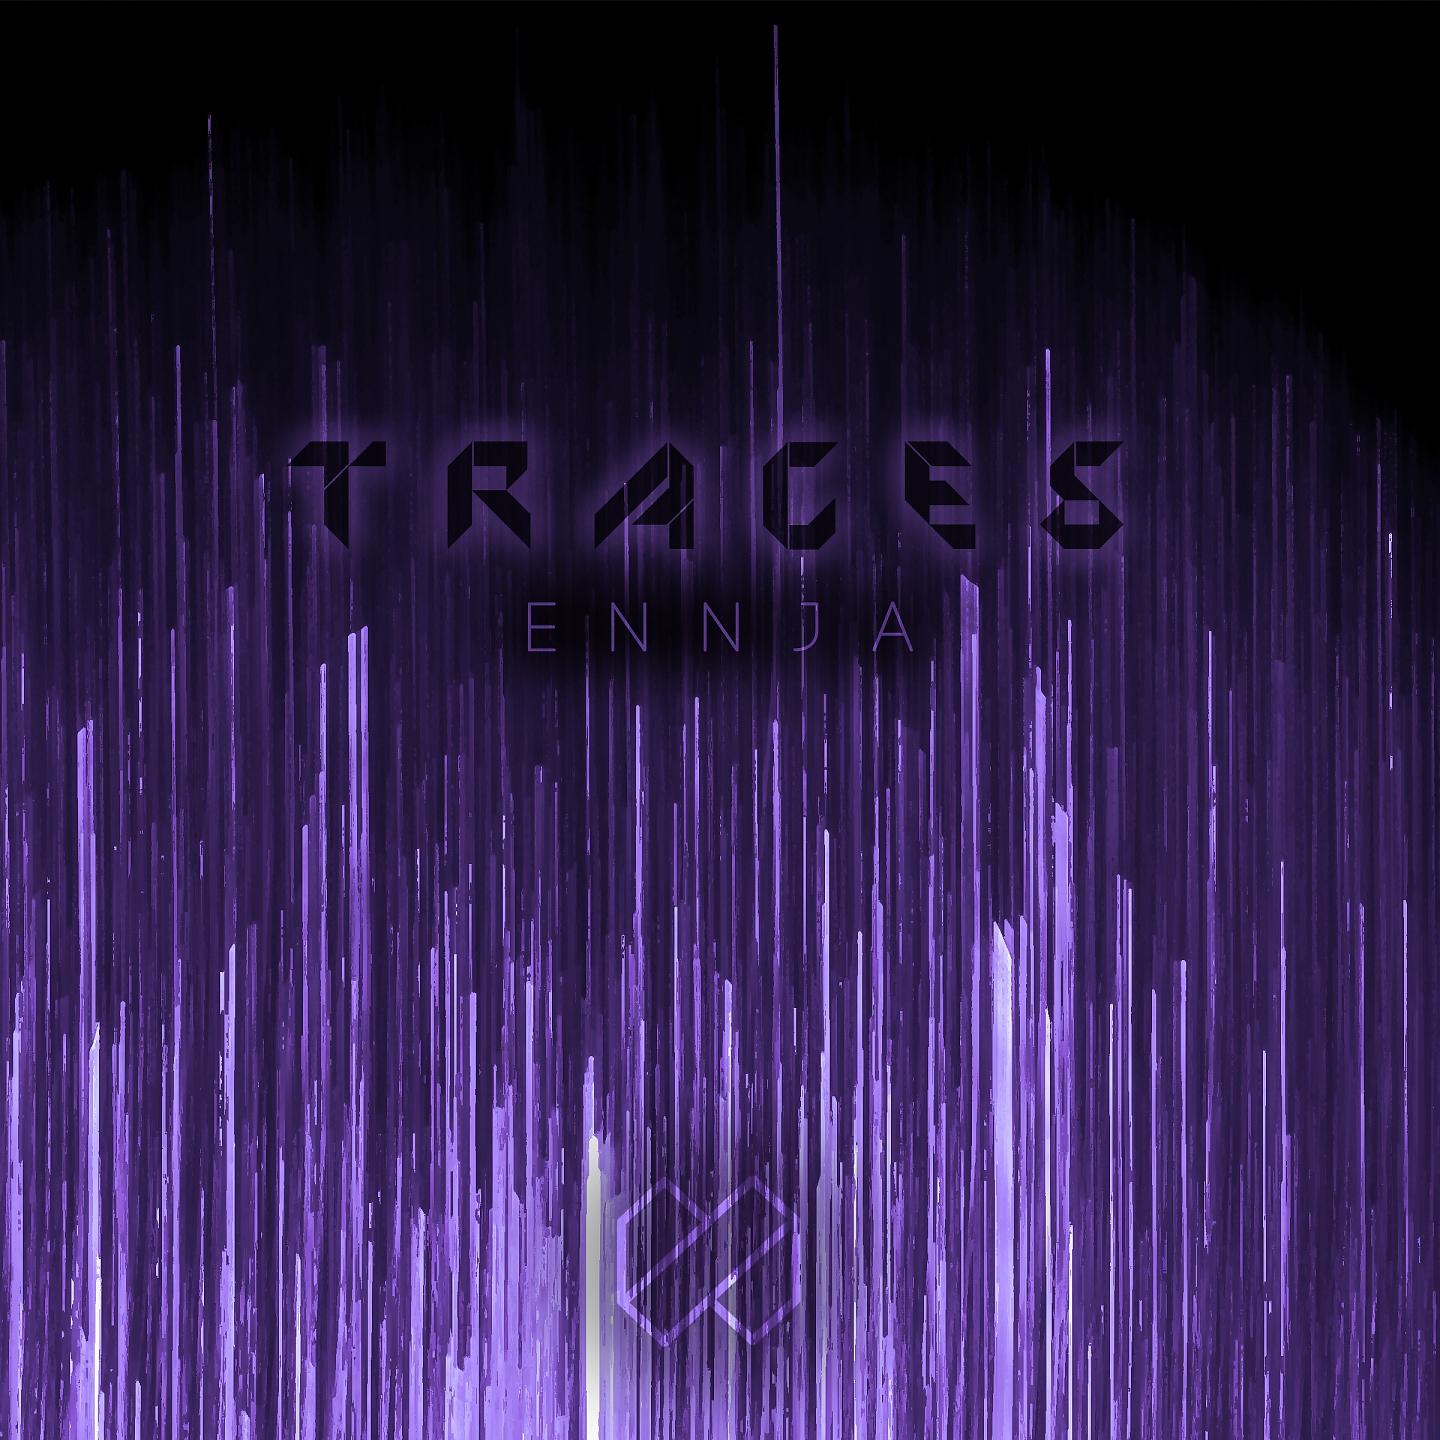 Постер альбома Traces